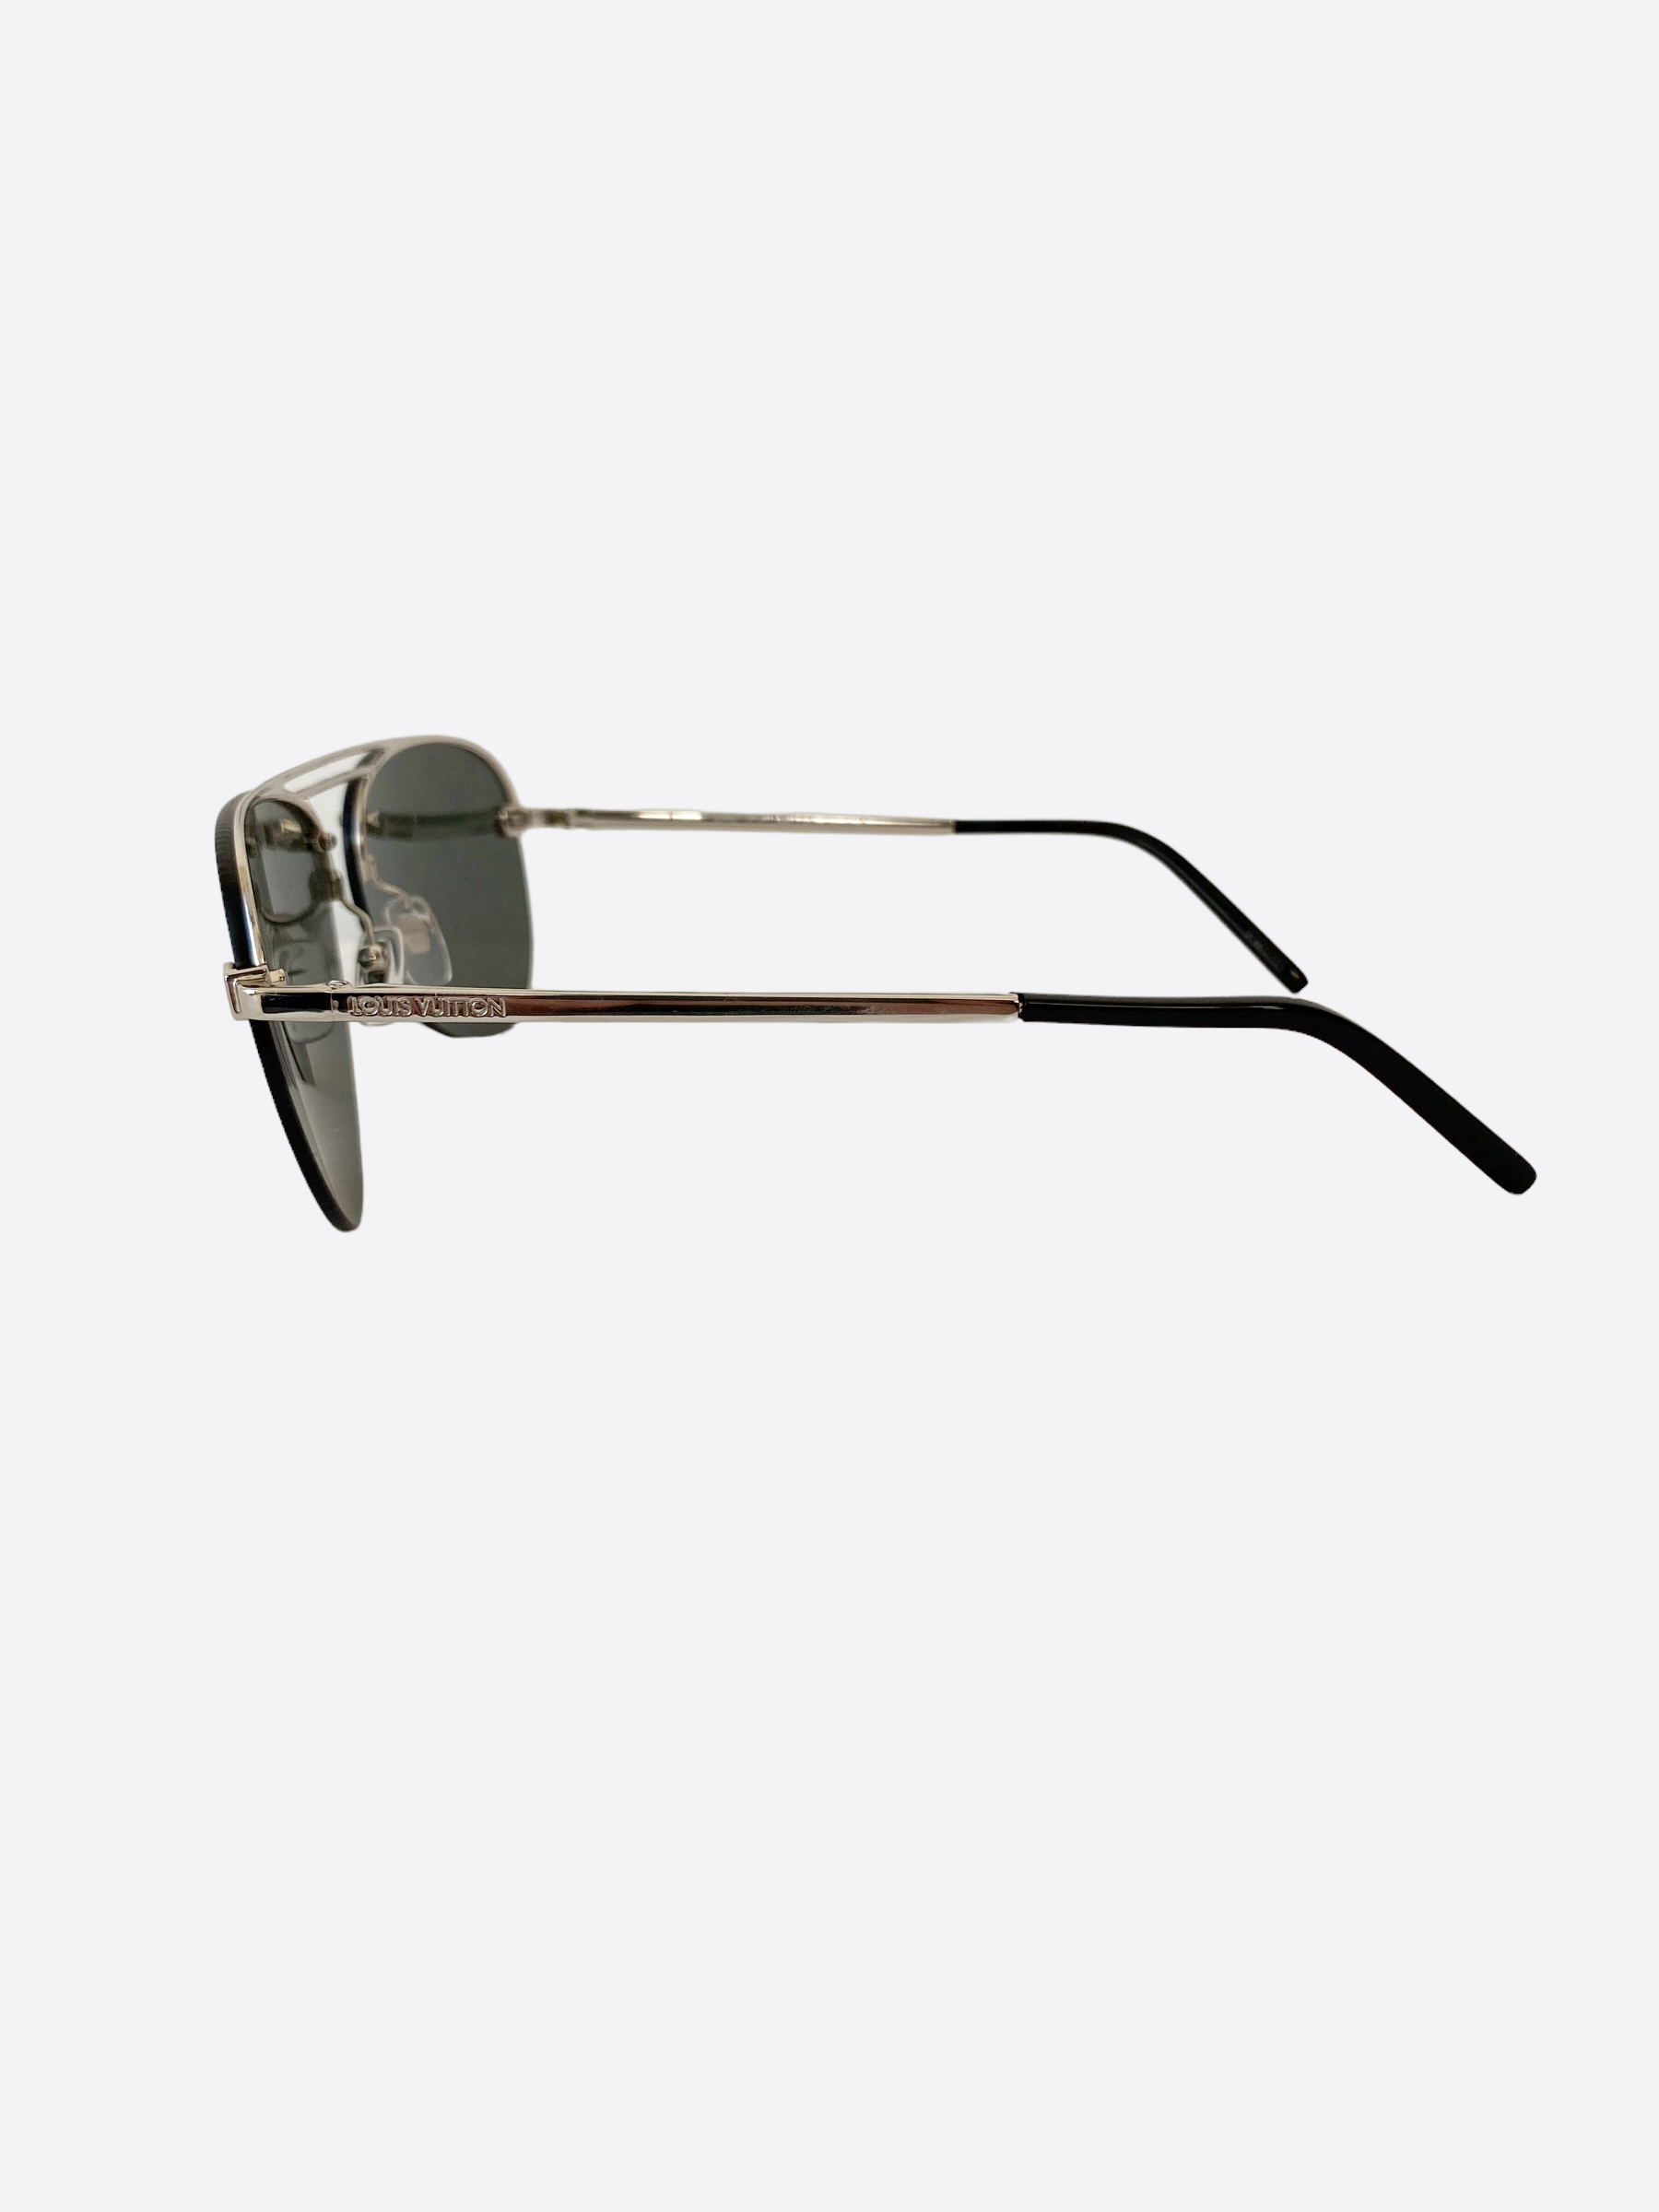 Louis Vuitton, zilveren gradient zonnebril. - Unique Designer Pieces